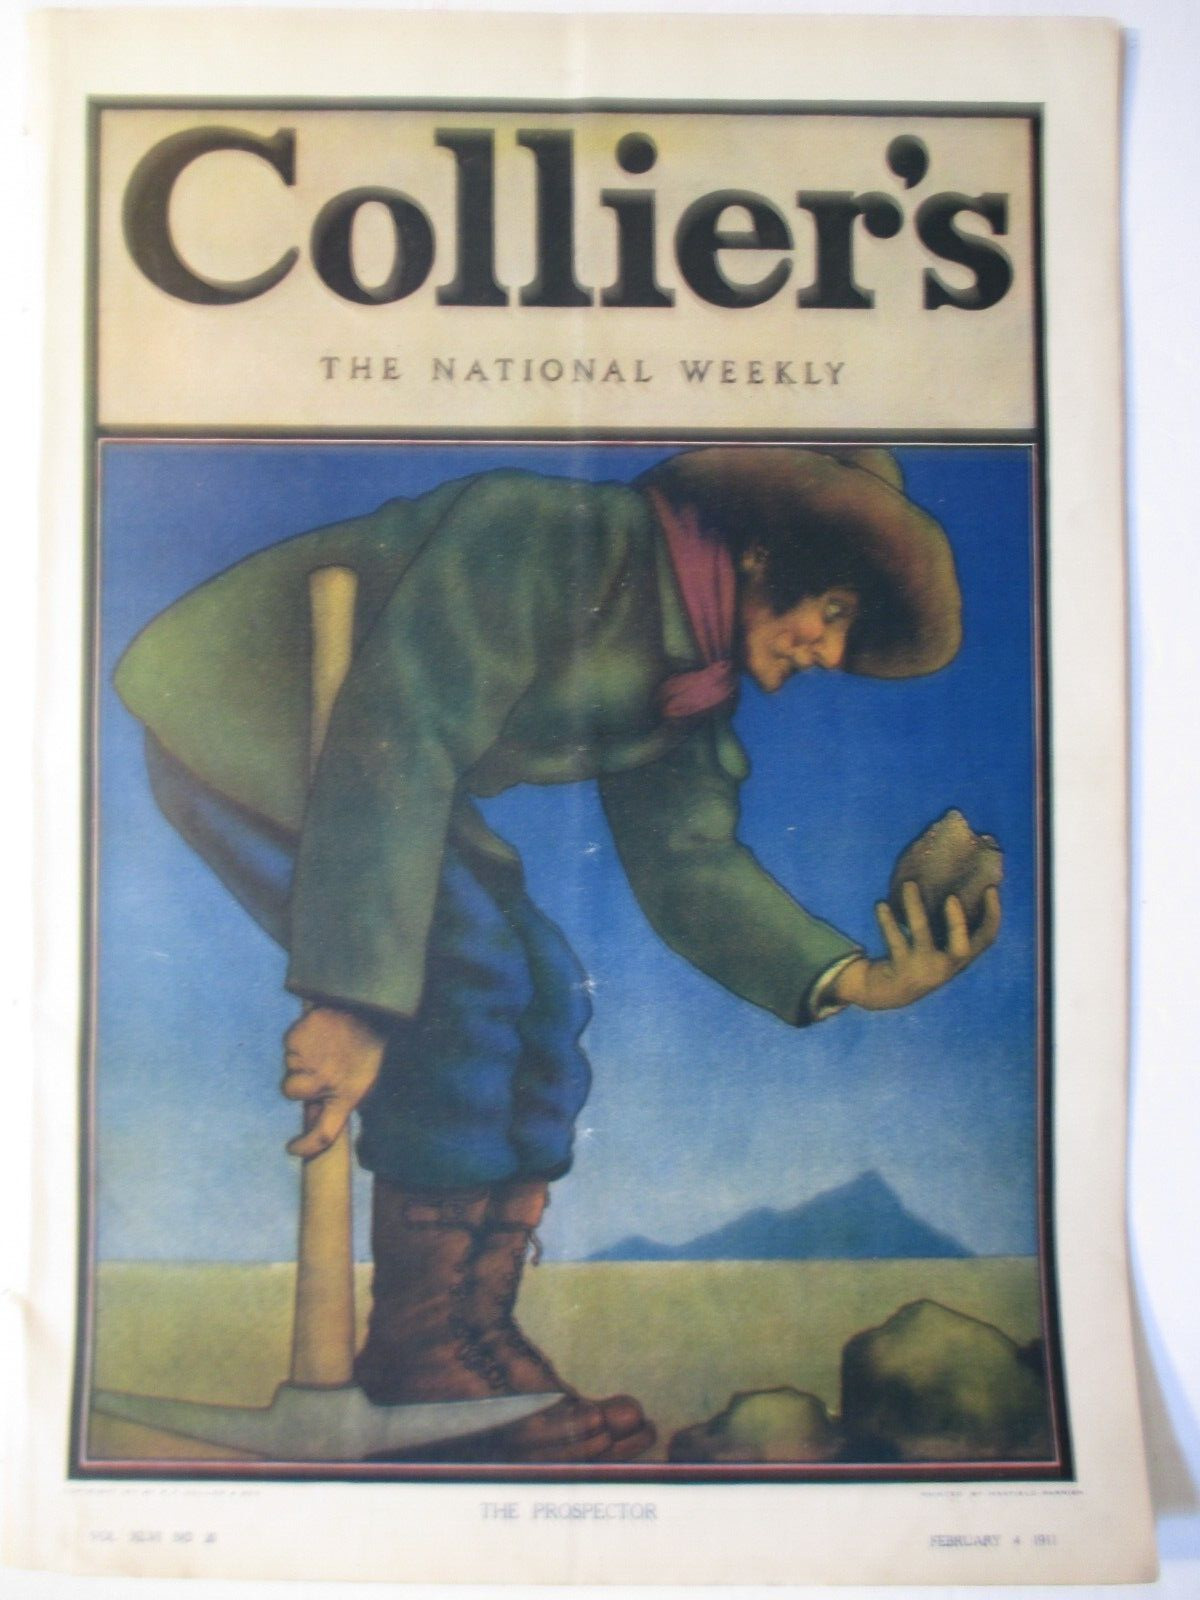 MAXFIELD PARRISH collier's magazine feb 4 1911 the prospector complete